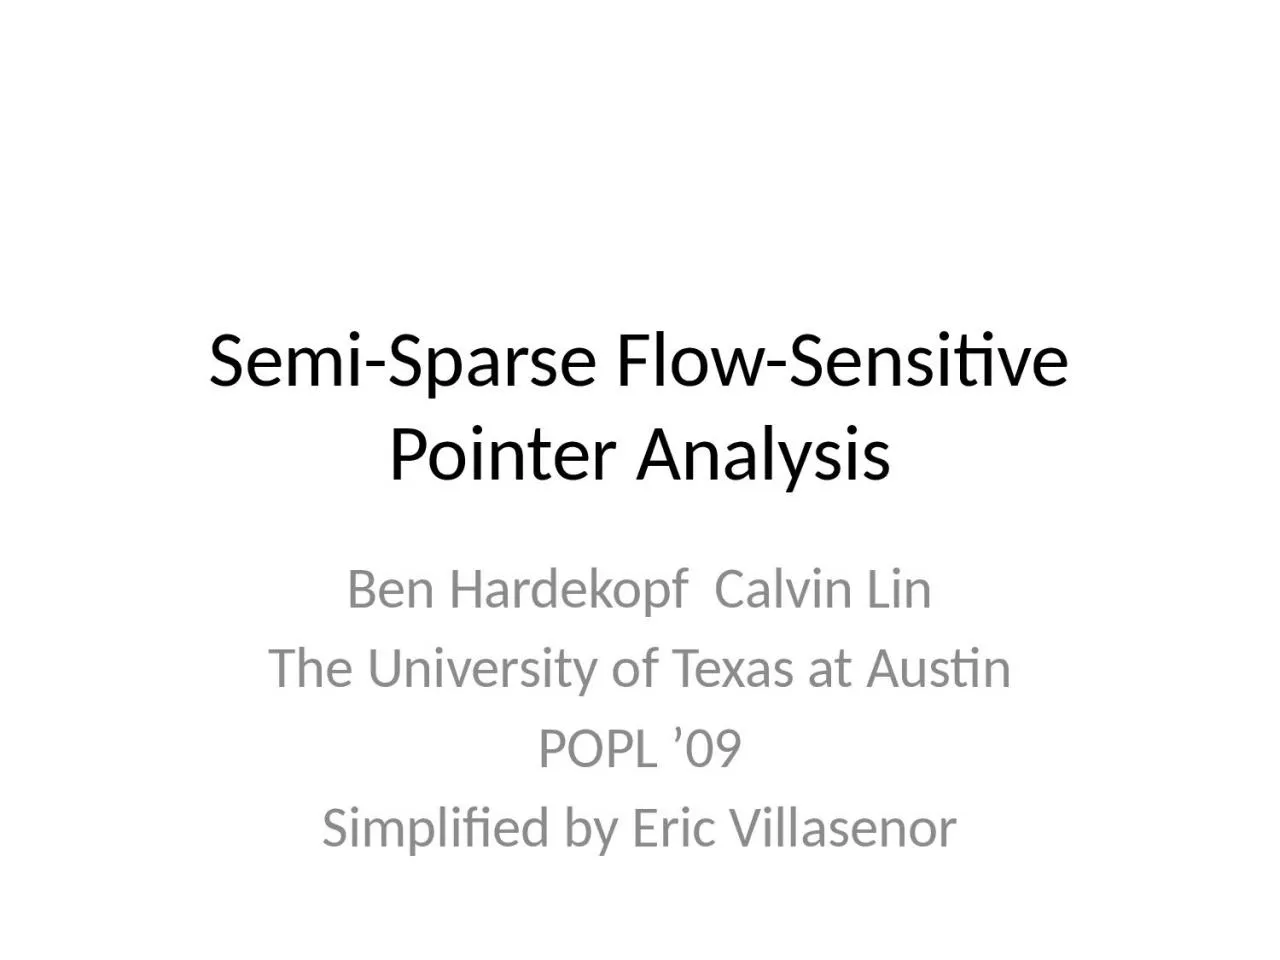 Semi-Sparse Flow-Sensitive Pointer Analysis